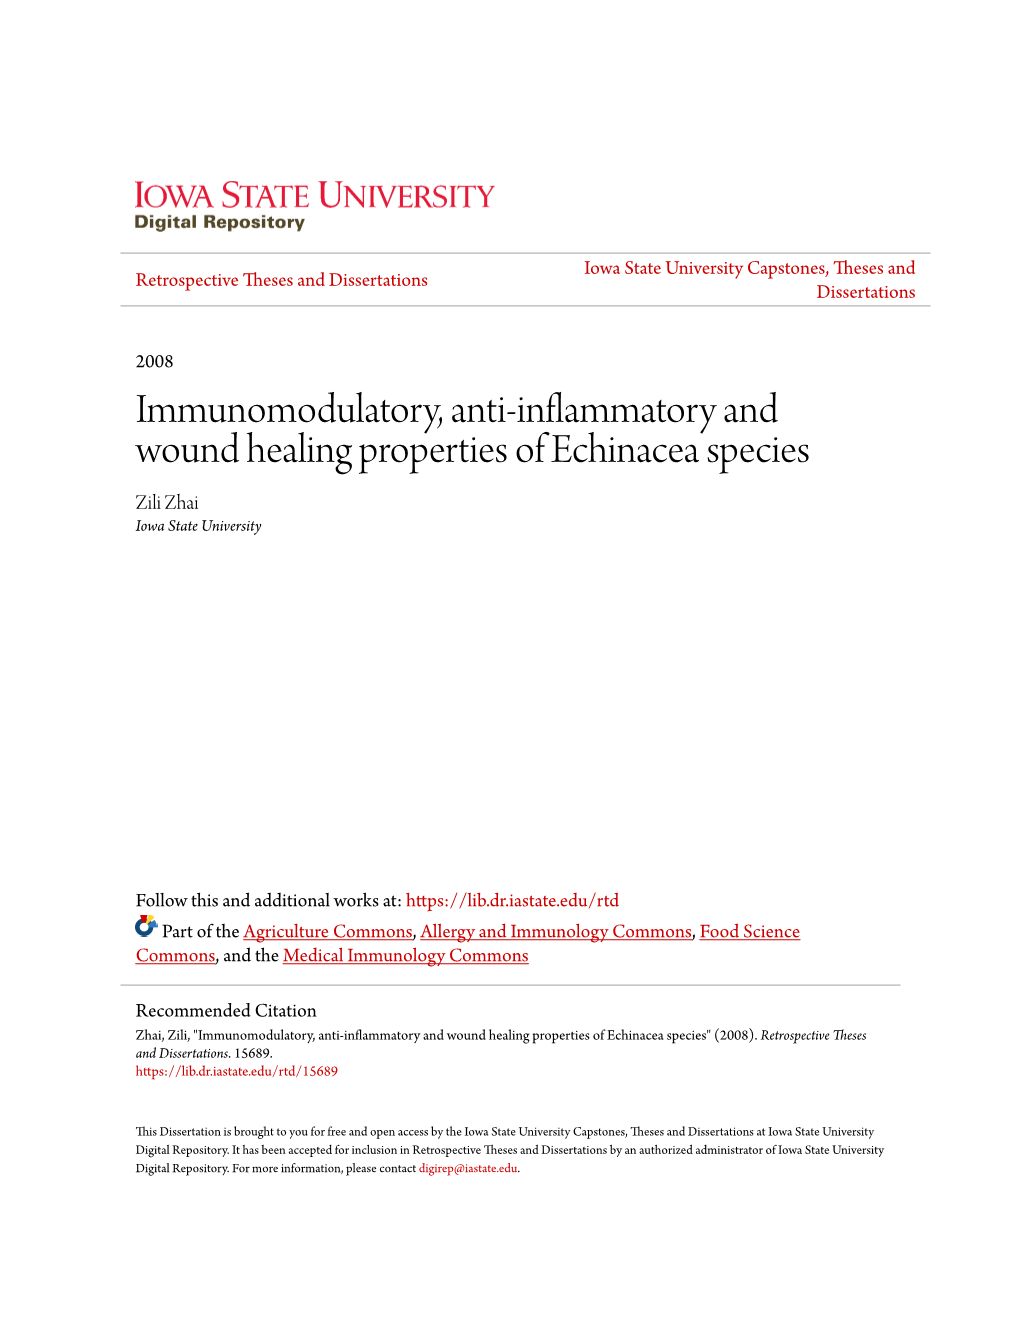 Immunomodulatory, Anti-Inflammatory and Wound Healing Properties of Echinacea Species Zili Zhai Iowa State University